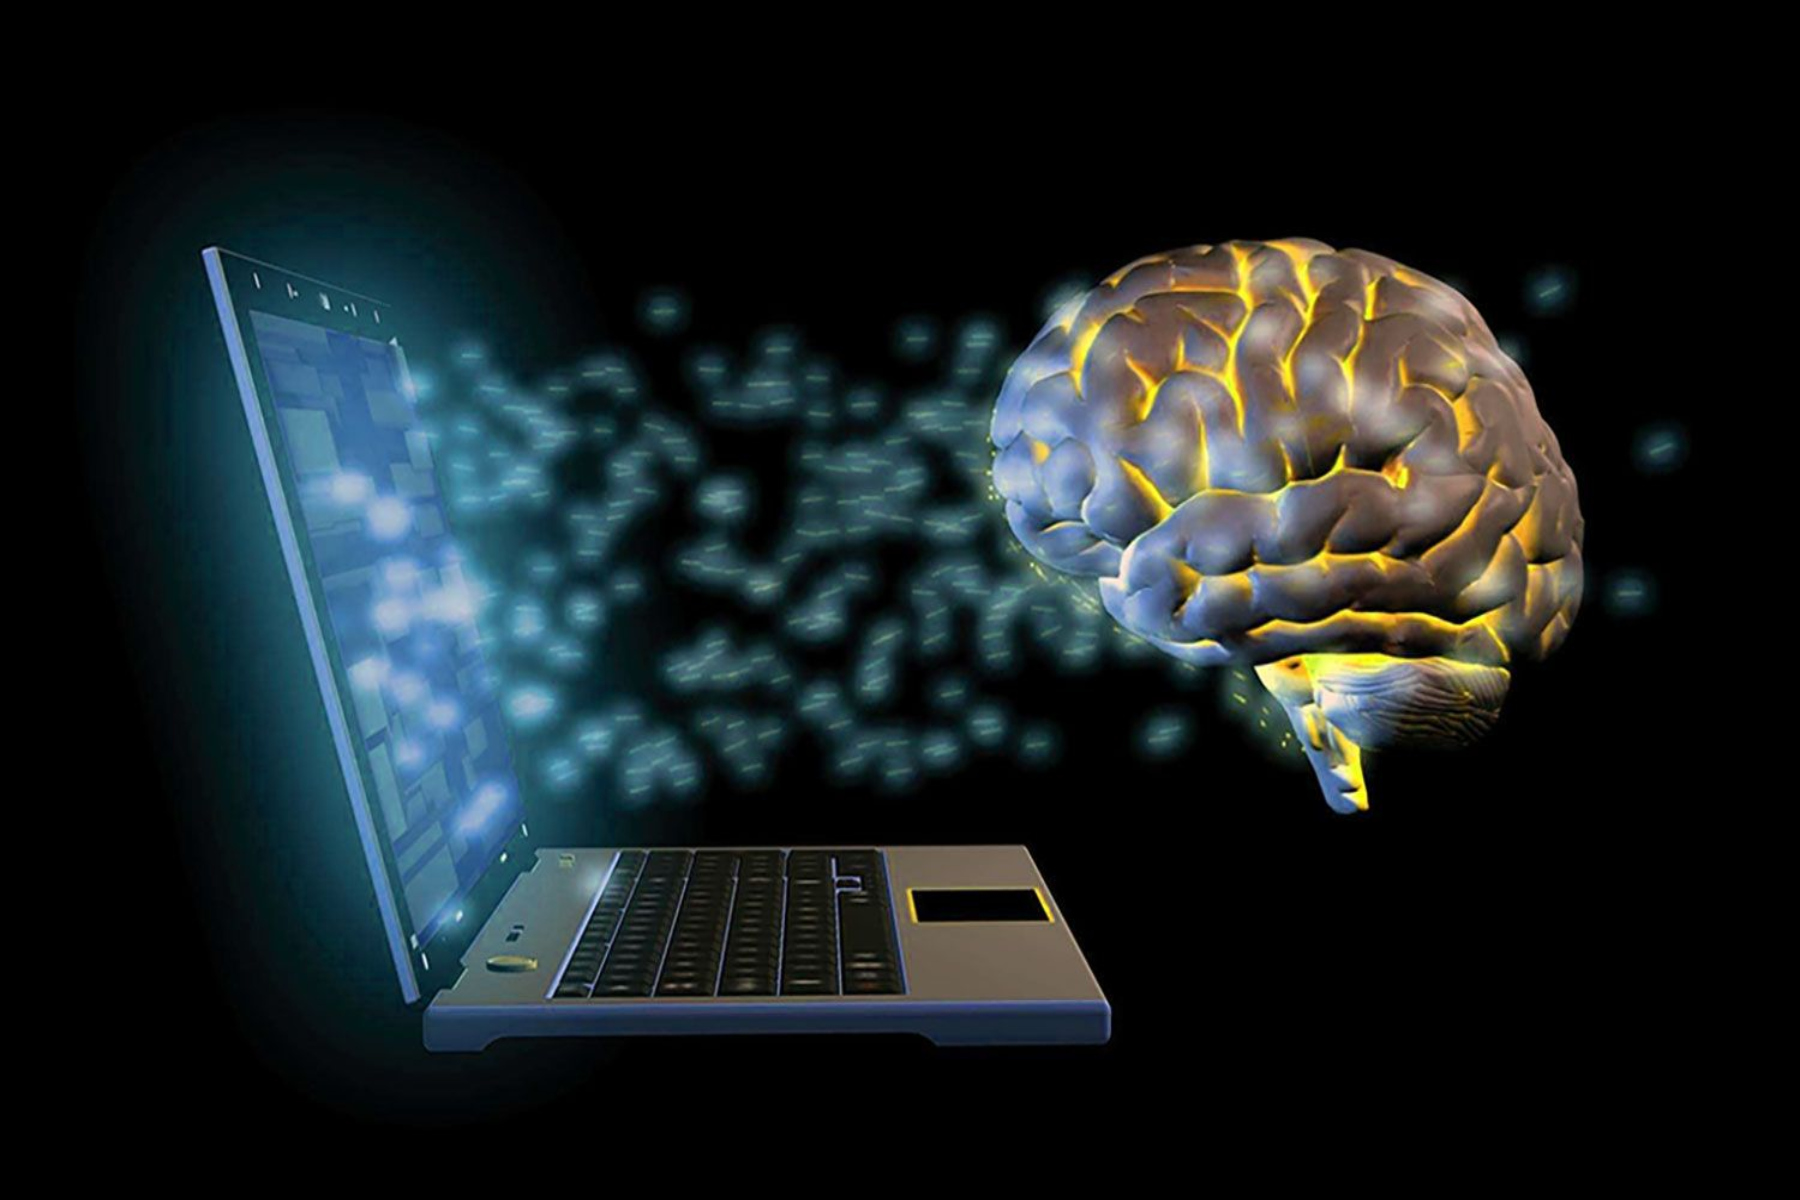 Τεχνολογία: Μελέτη για τη δημιουργία συστήματος διεπαφής εγκεφάλου-υπολογιστή επόμενης γενιάς